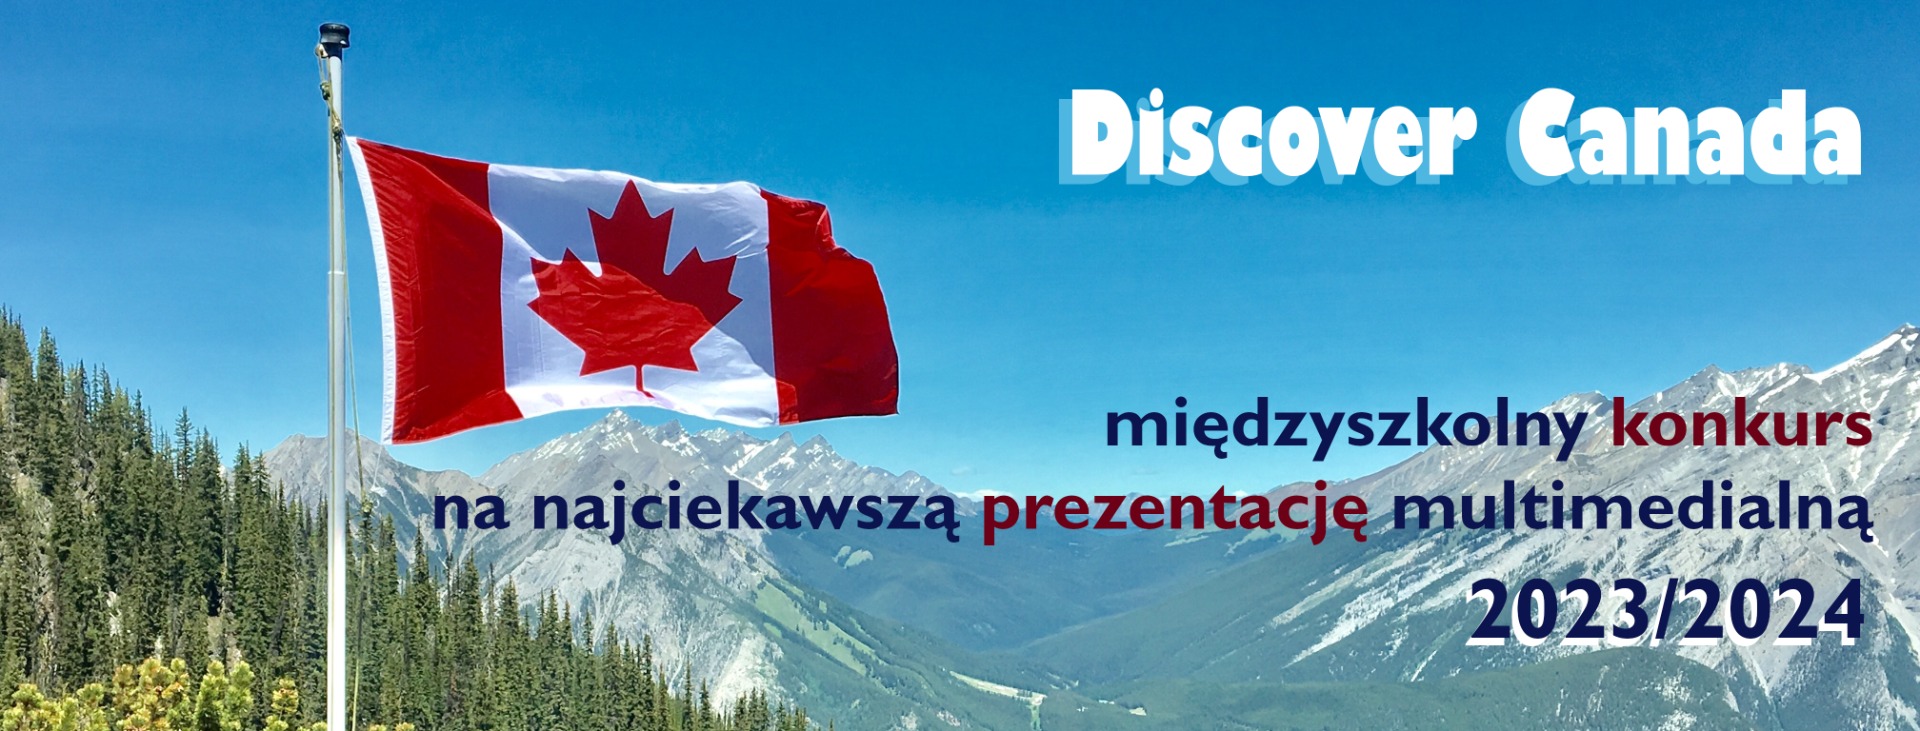 Międzyszkolny konkurs na najciekawszą prezentację multimedialną „Discover Canada 2023/2024” - Obrazek 1